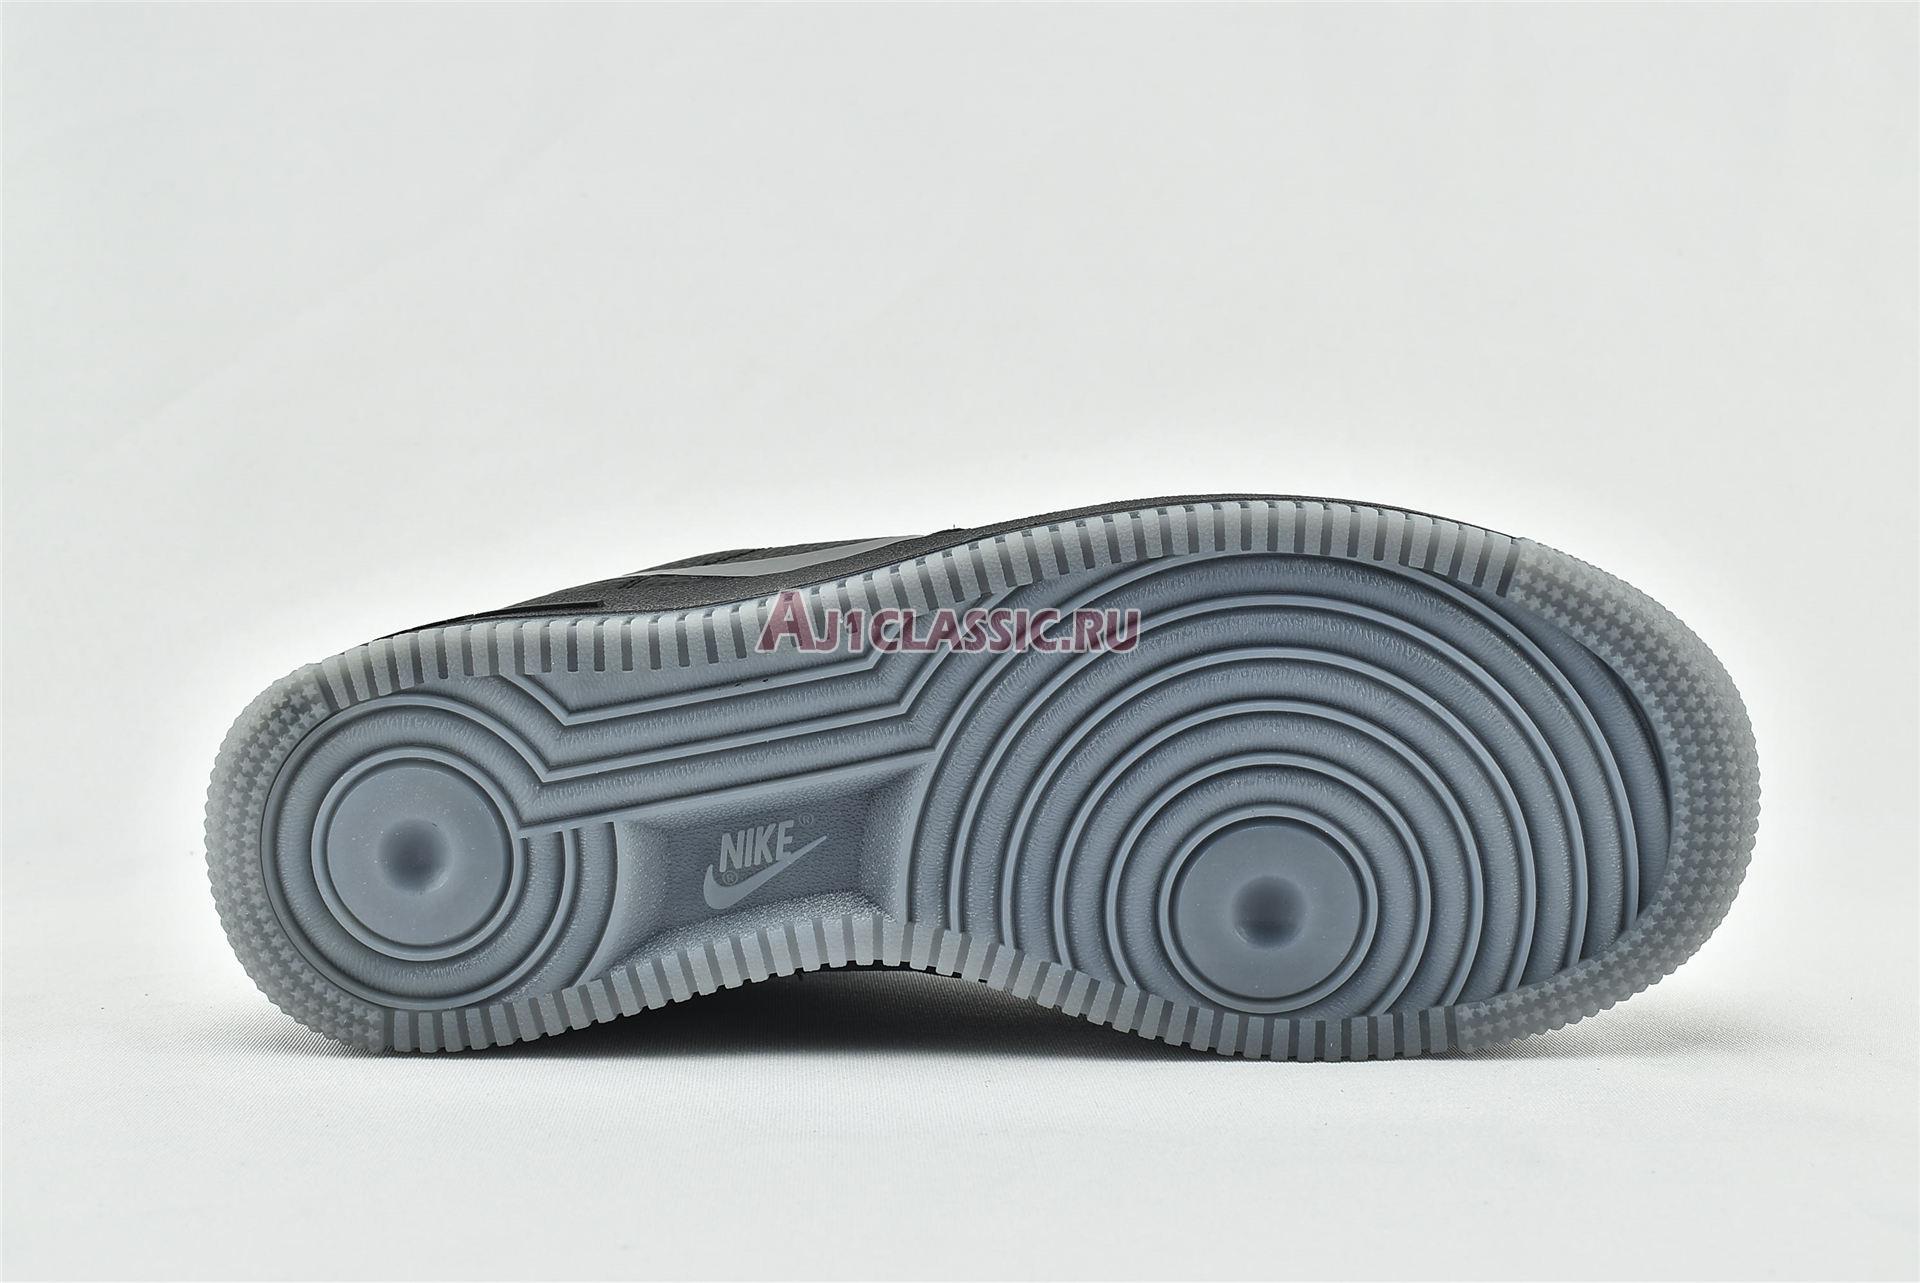 Nike Air Force 1 Low "Grey Swoosh" CD0888-001